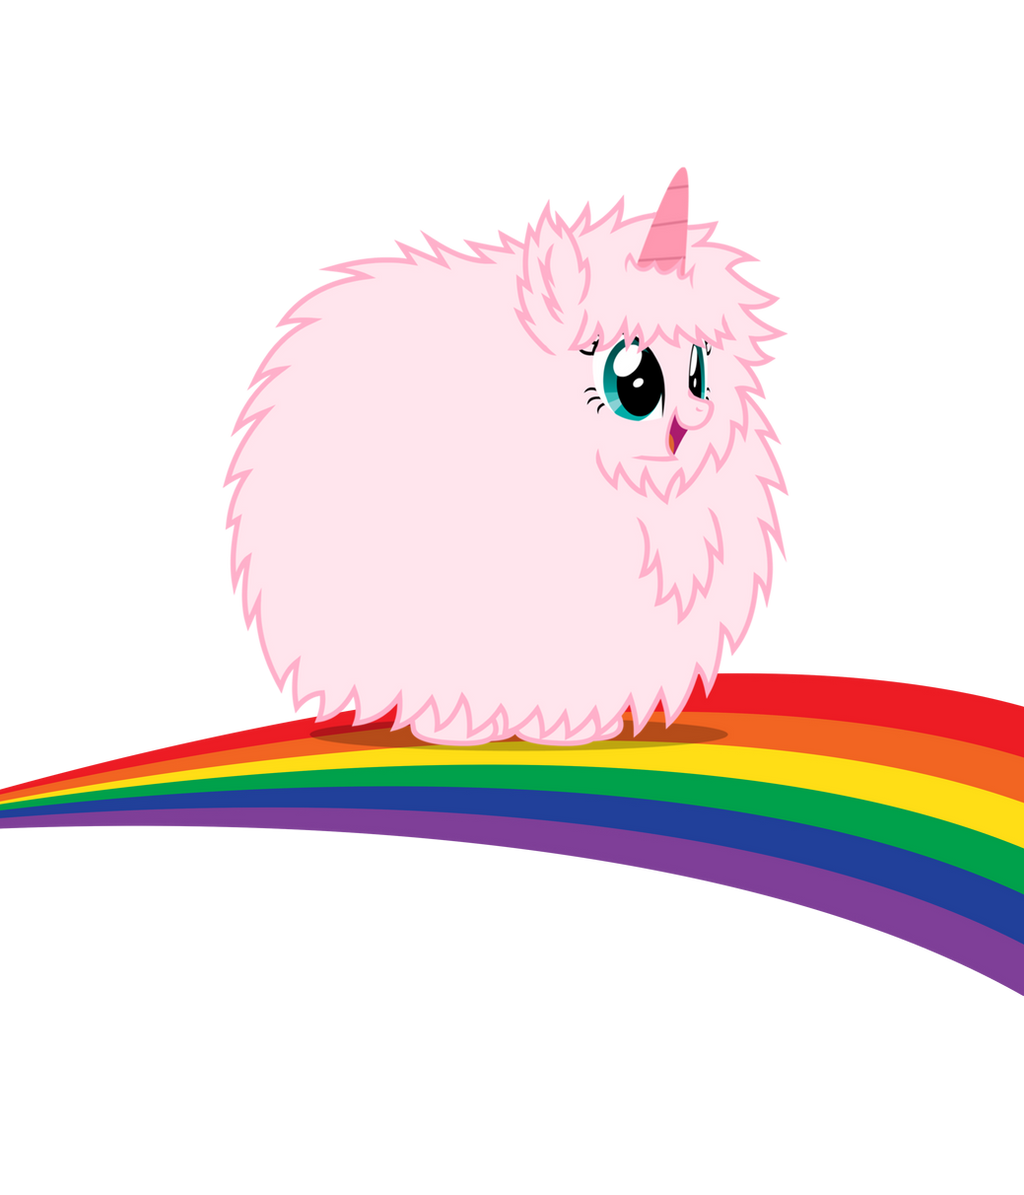 Résultat de recherche d'images pour "pink fluffy unicorn"